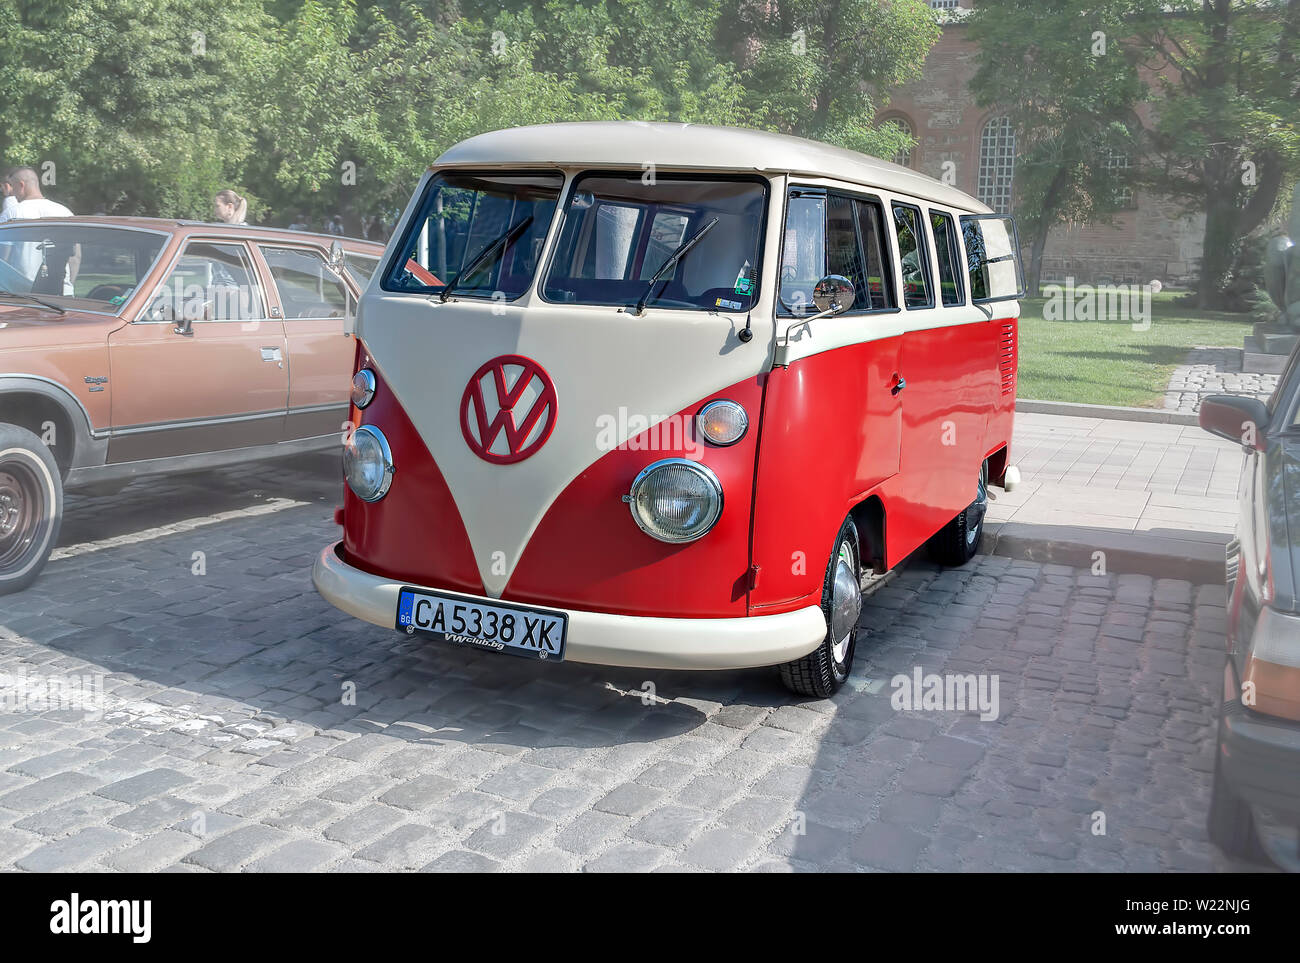 Vetture retrò;retrò parata automatica;Volkswagen Transporter;1962; Foto Stock